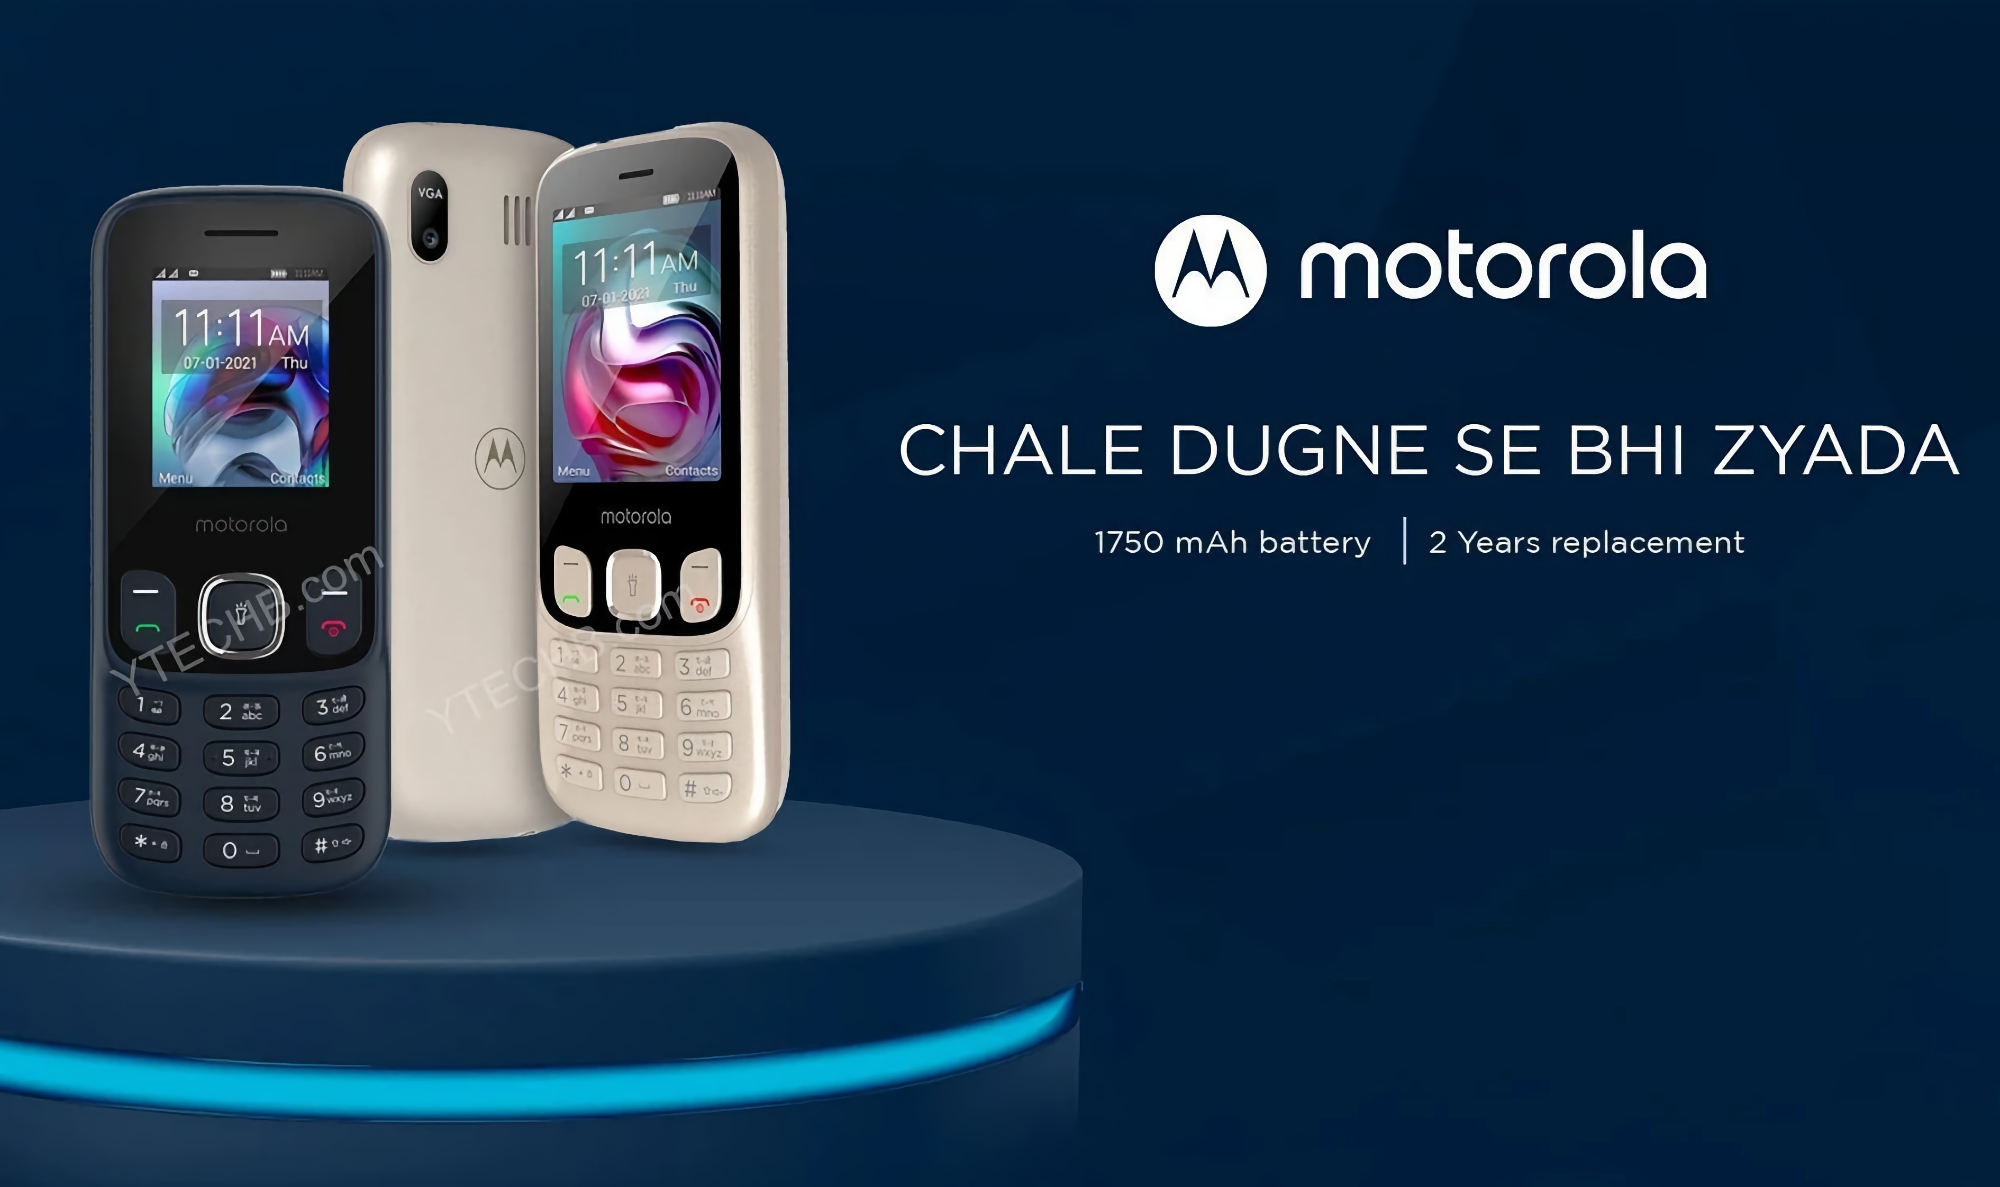 Pour concurrencer Nokia, Motorola revient sur le marché des téléphones portables avec les Moto A10, Moto A50 et Moto A70